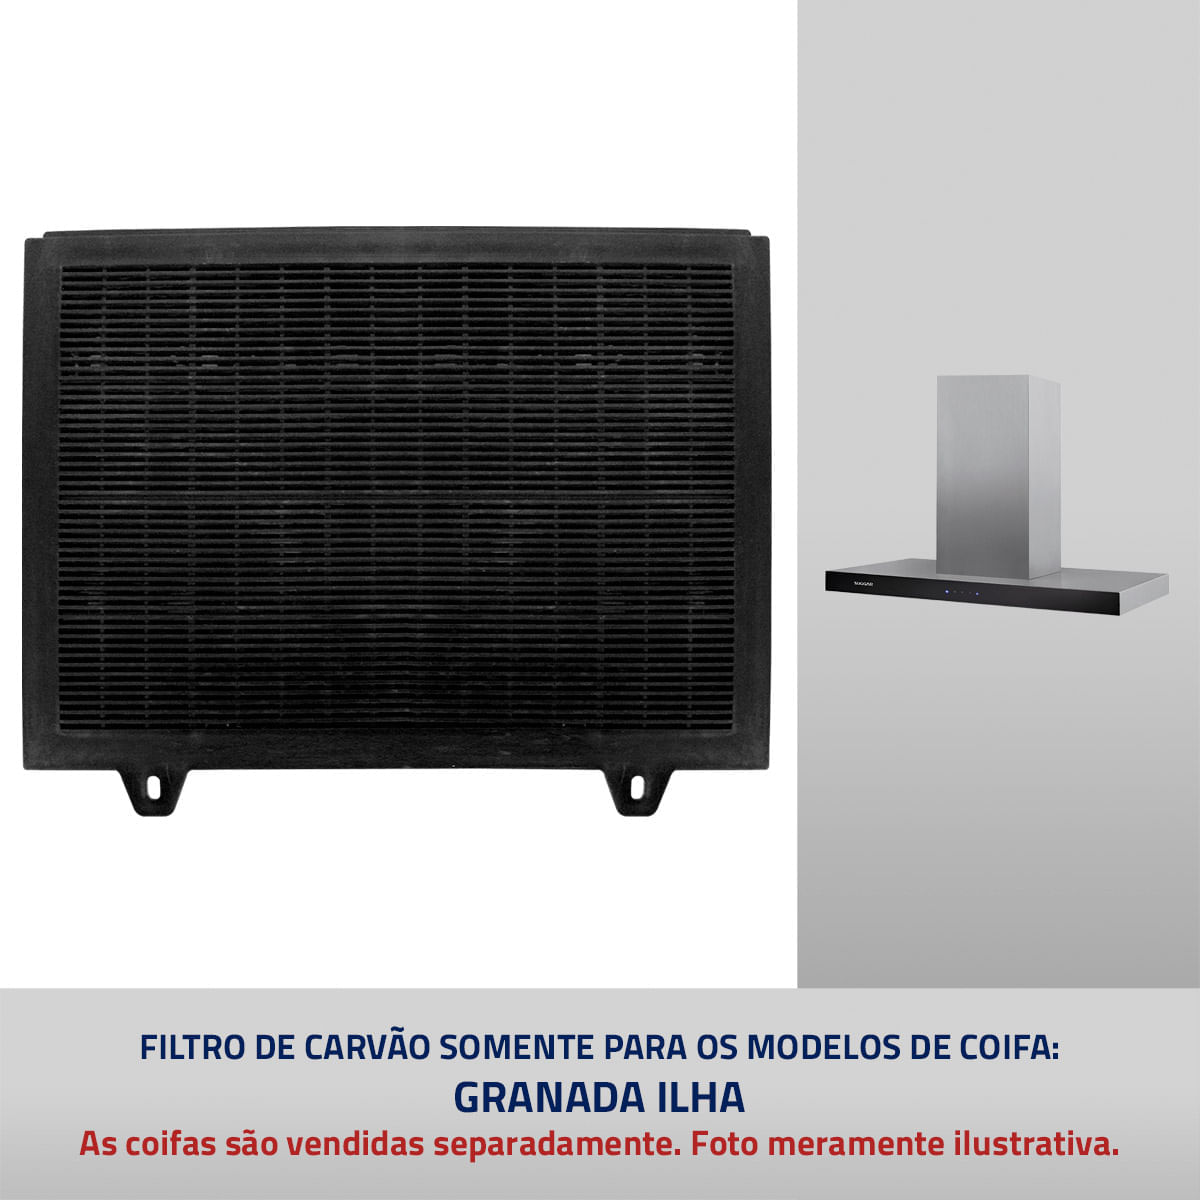 Filtro de Carvão para Coifa Suggar modelo Granada Ilha 4806529